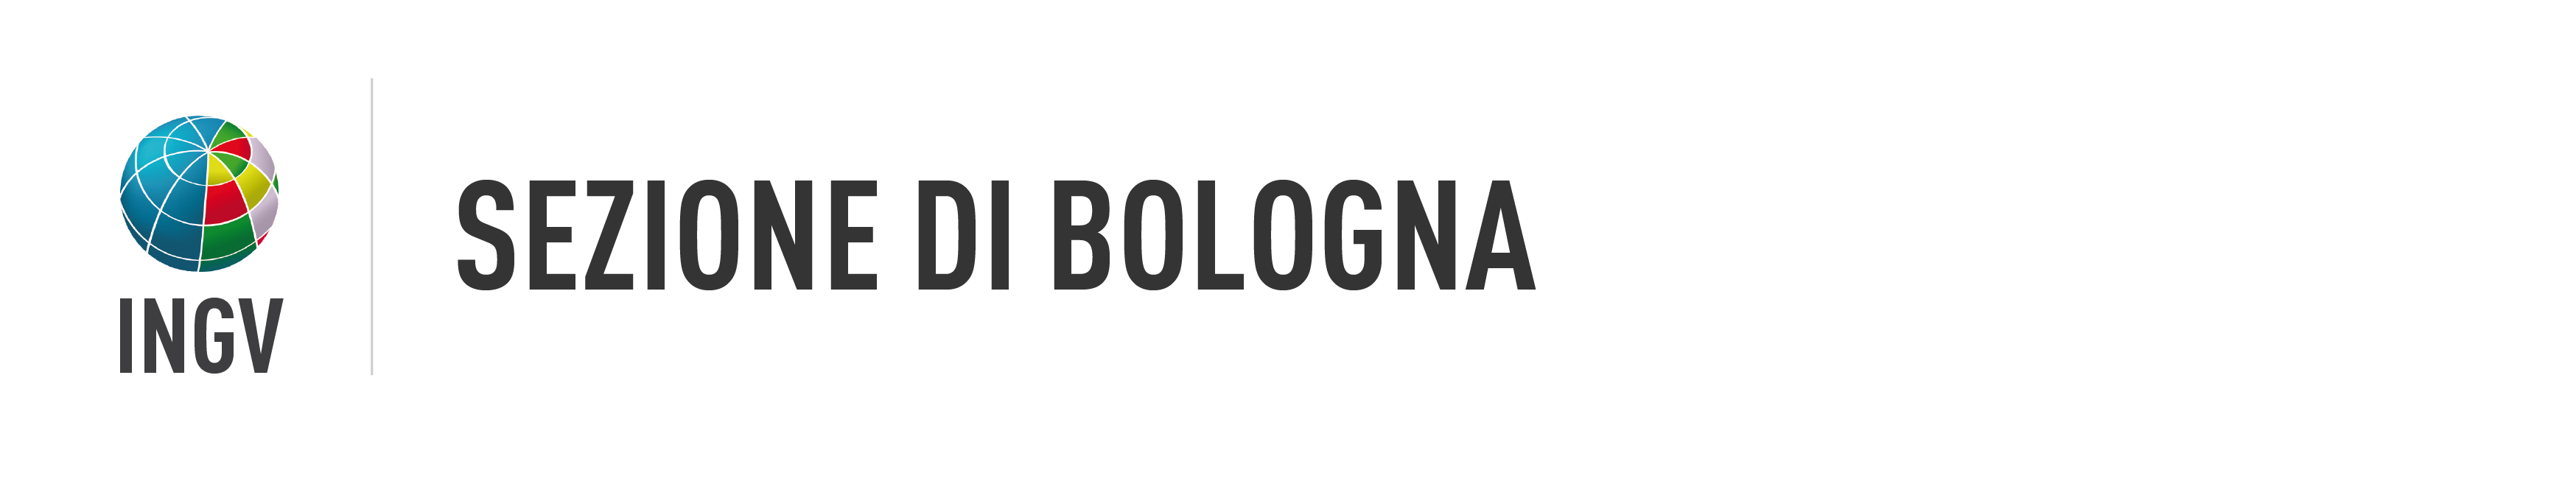 Sezione di Bologna, main banner